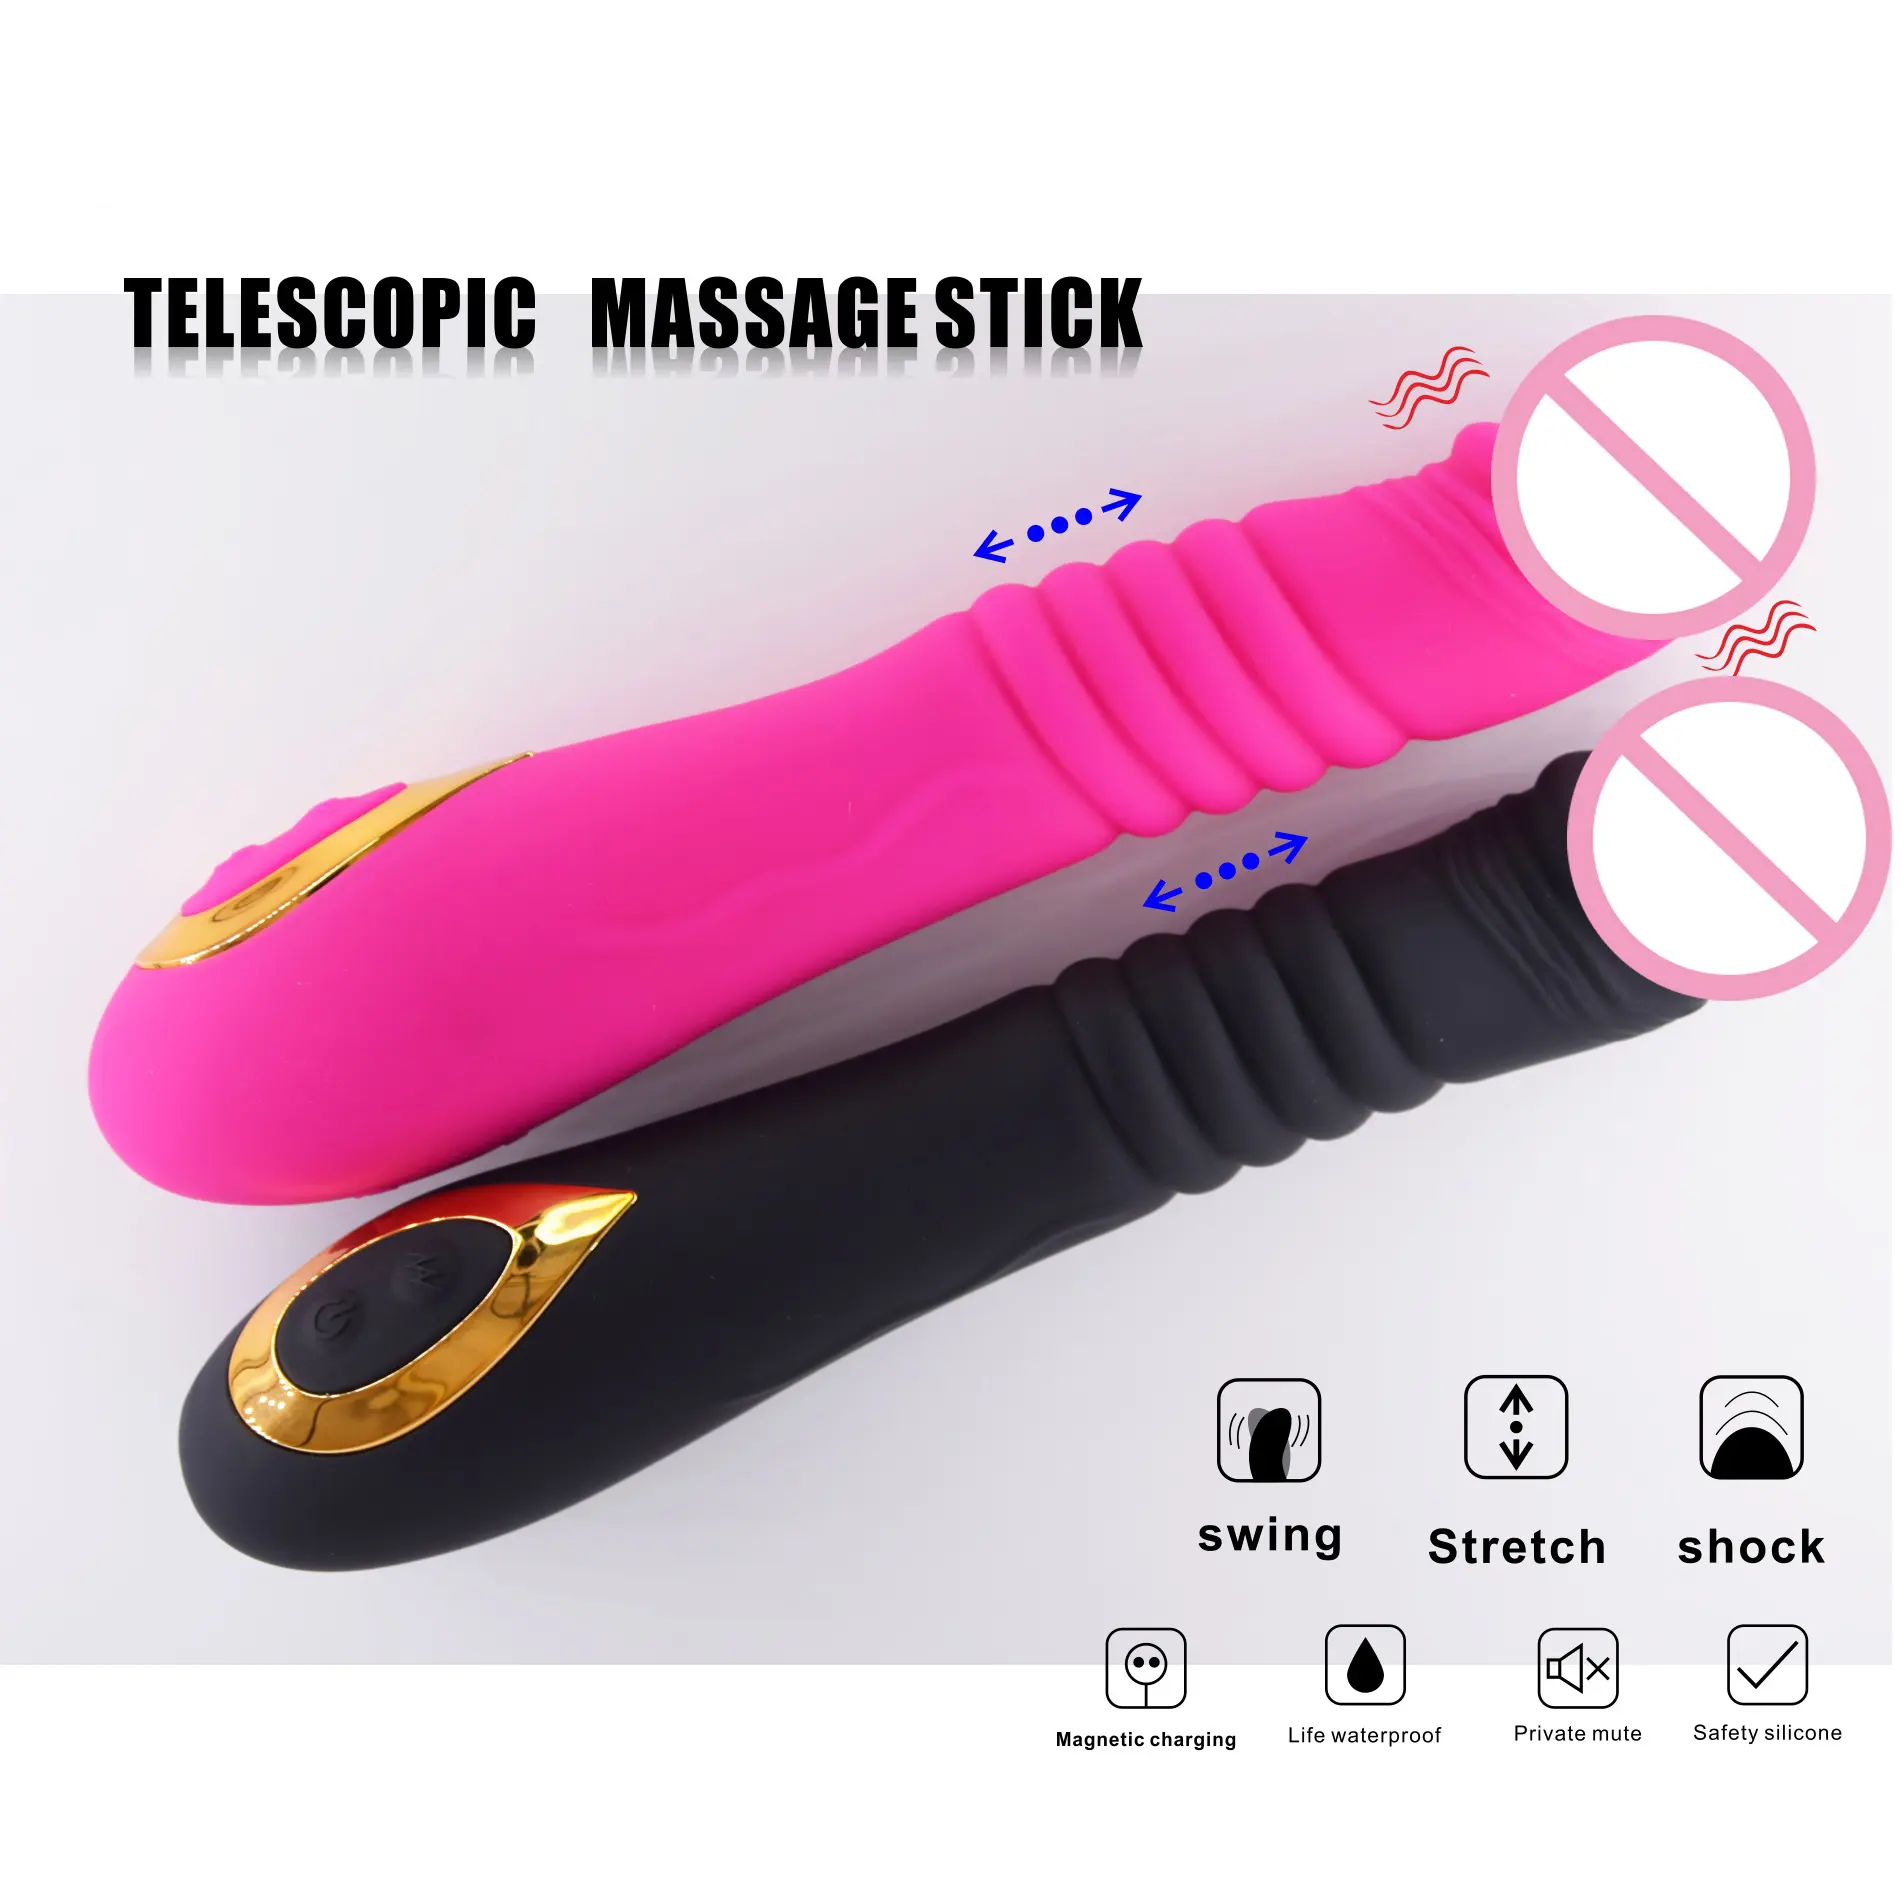 Venta caliente 18 velocidades y 5 bandas consoladores telescópicos y vibrador estimulan el punto G orgasmo juguetes sexuales para mujeres